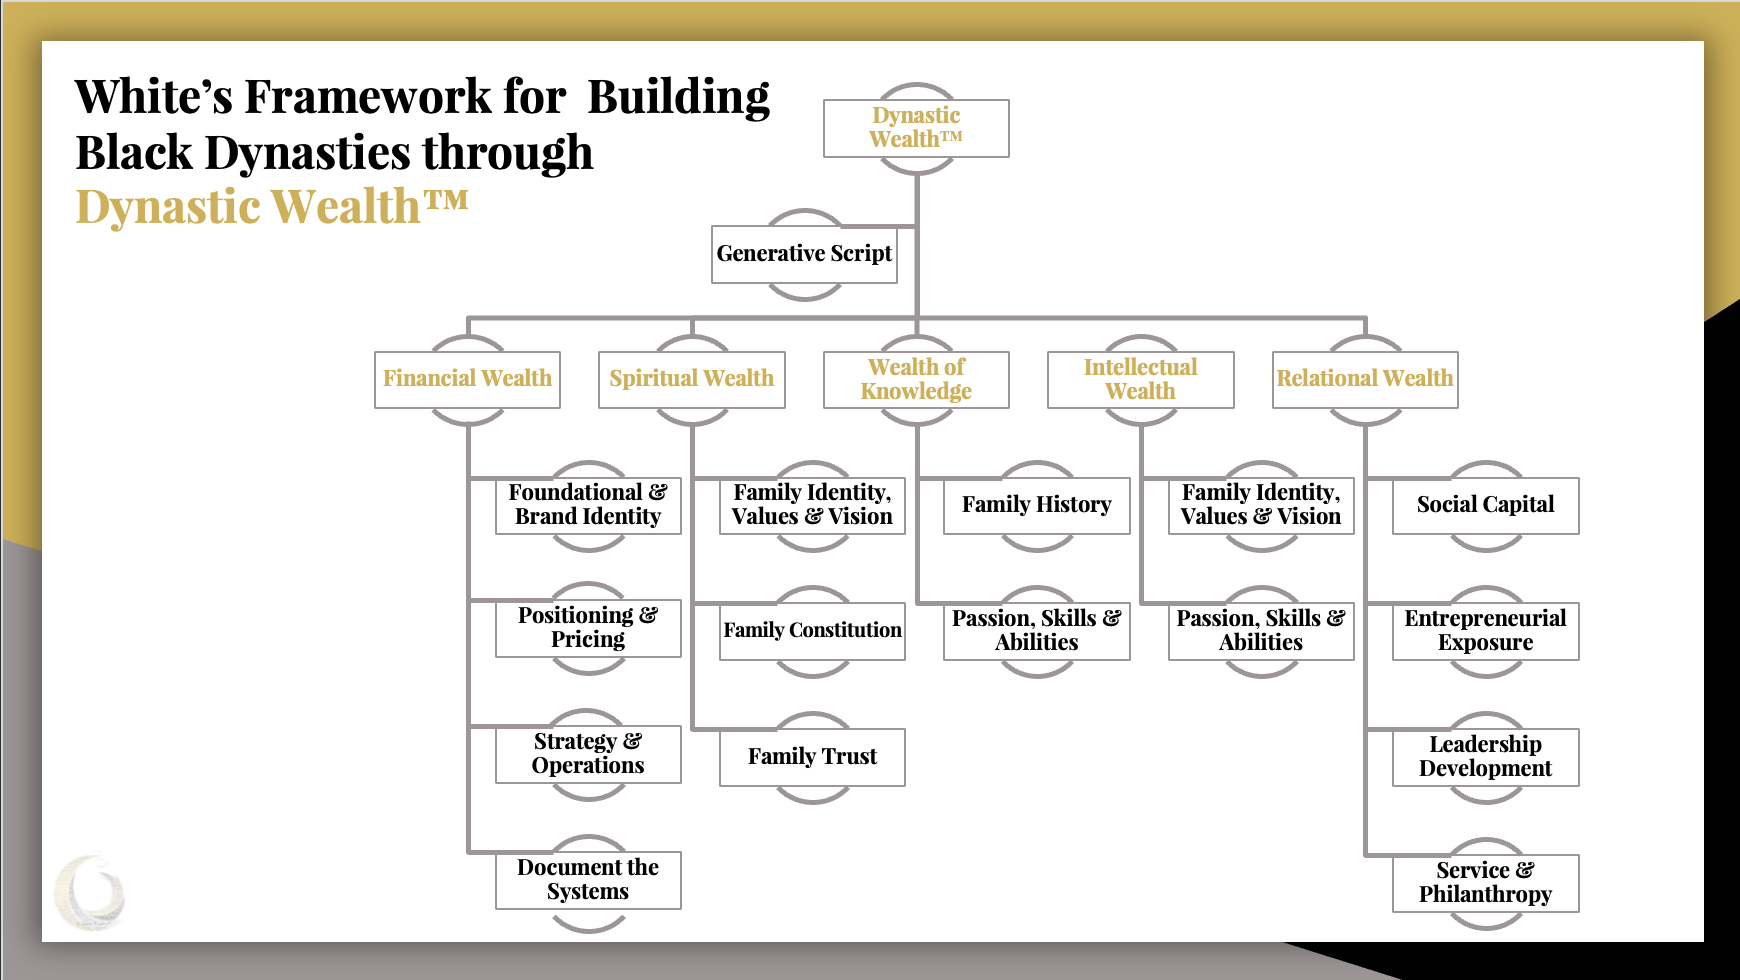 White's Framework for Dynastic Wealth™